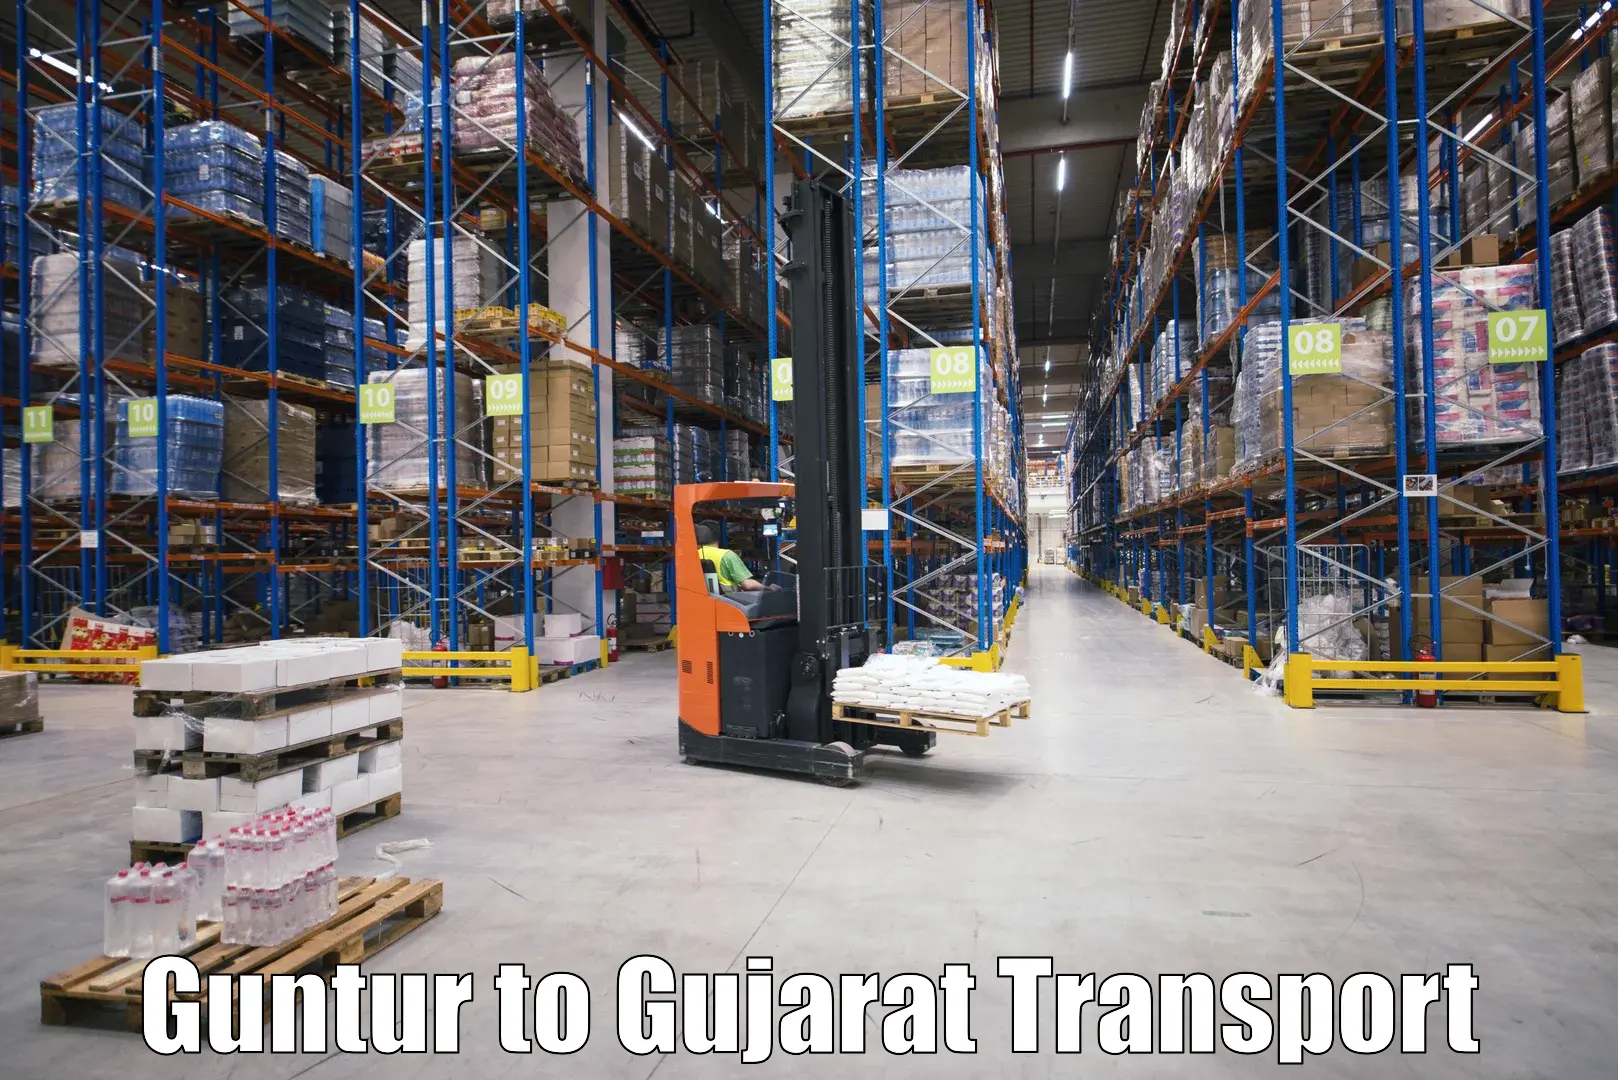 Vehicle courier services Guntur to Rapar